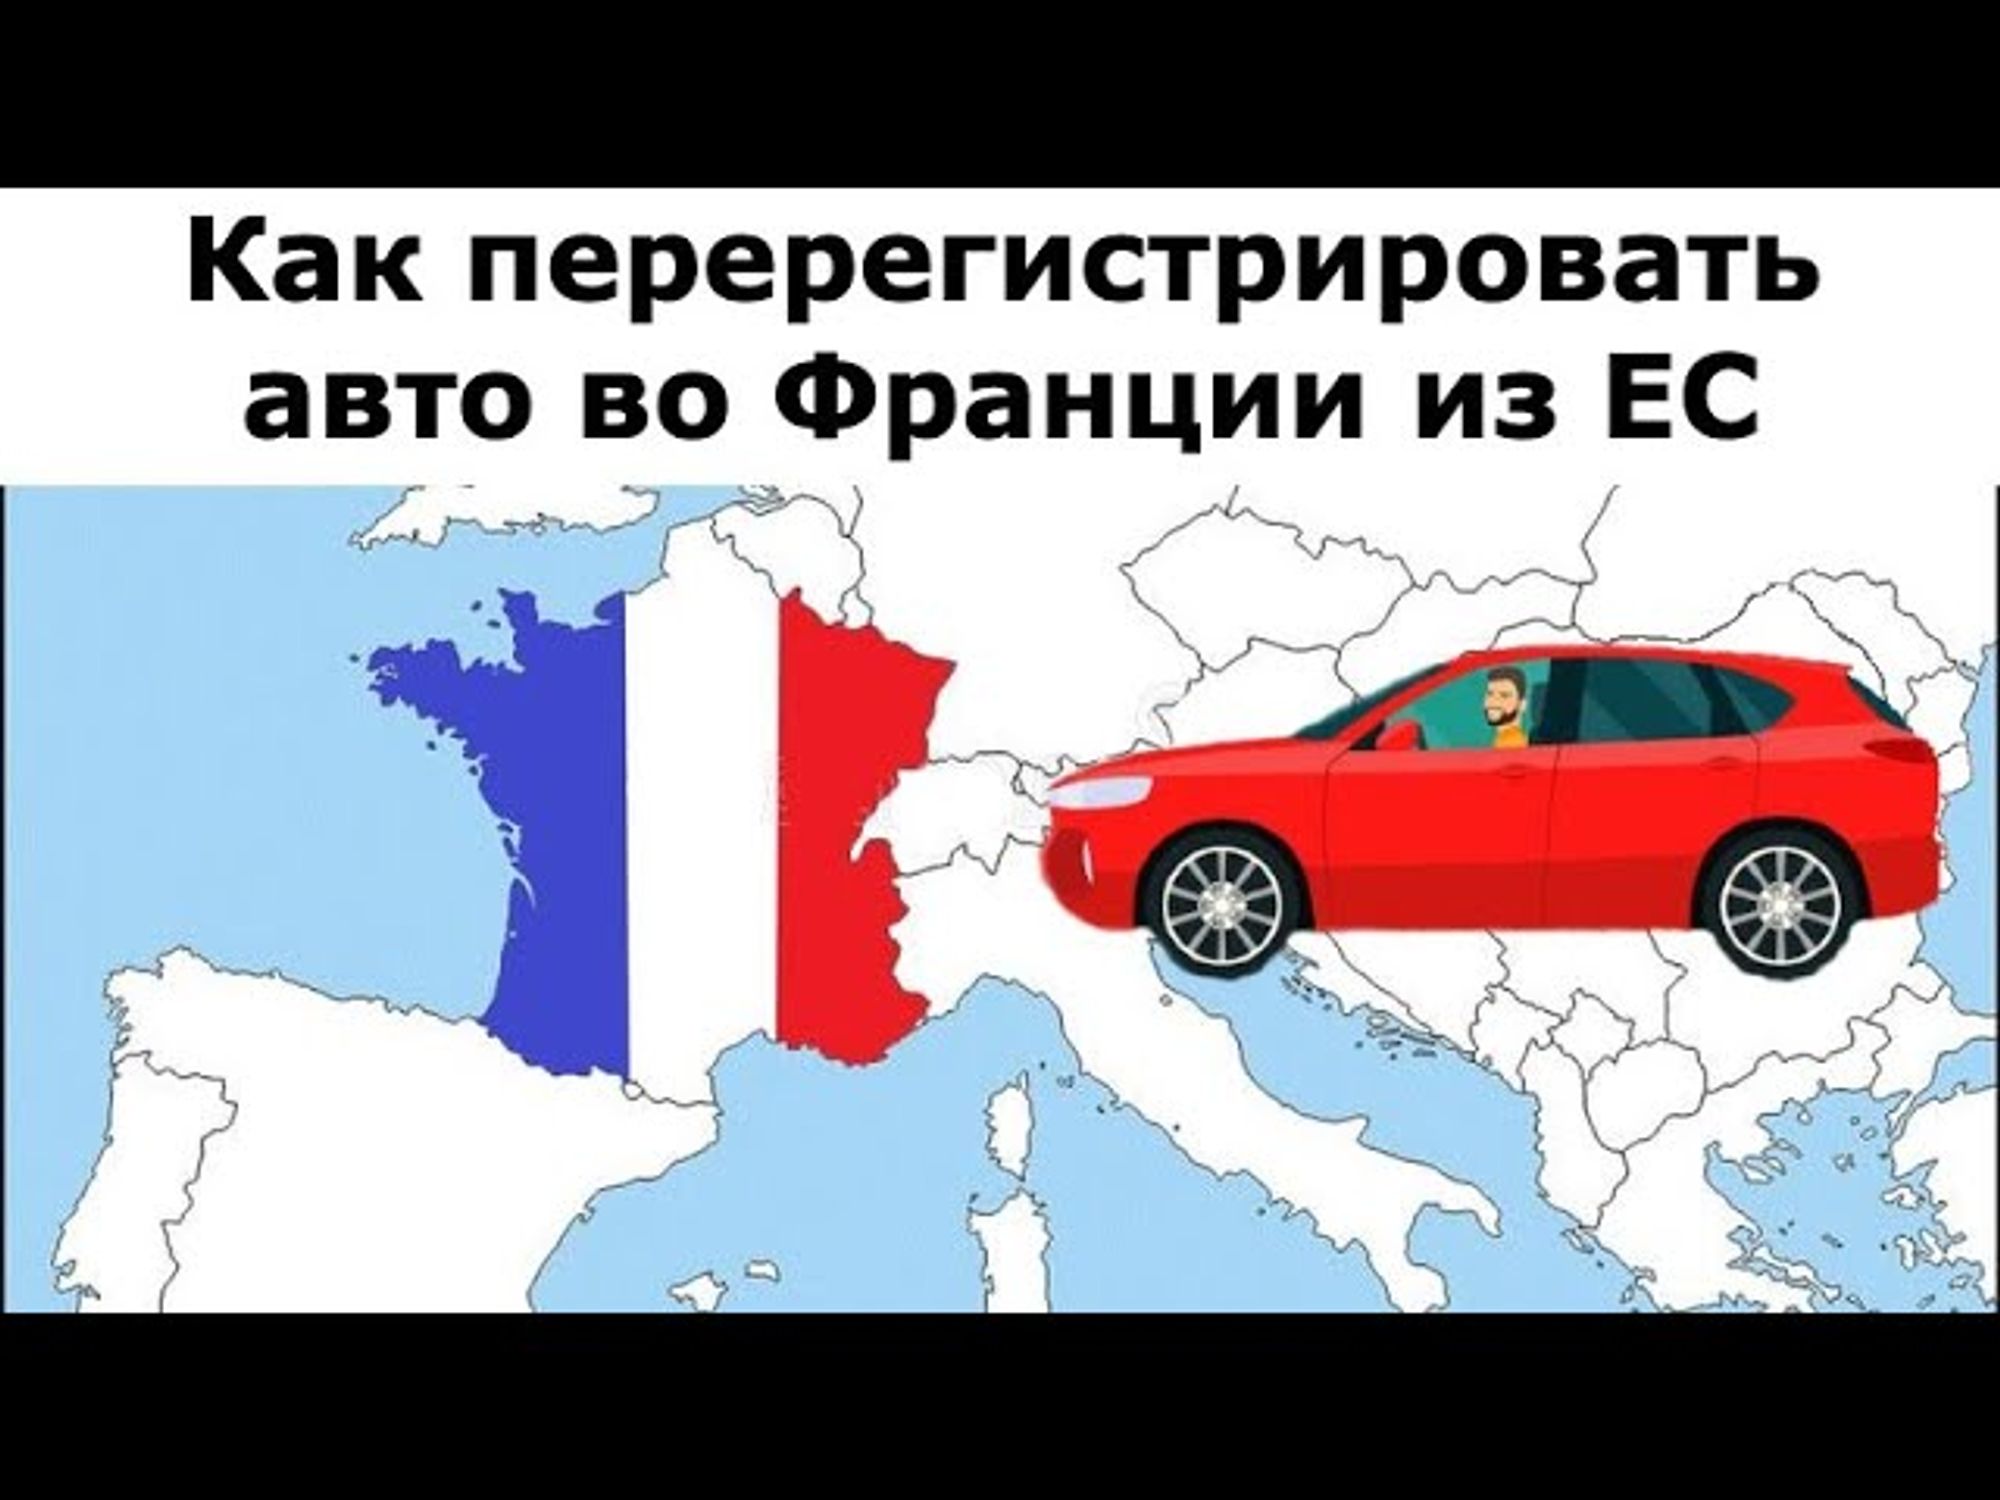 Как перерегистрировать авто во Франции из-за границы (страны ЕС)